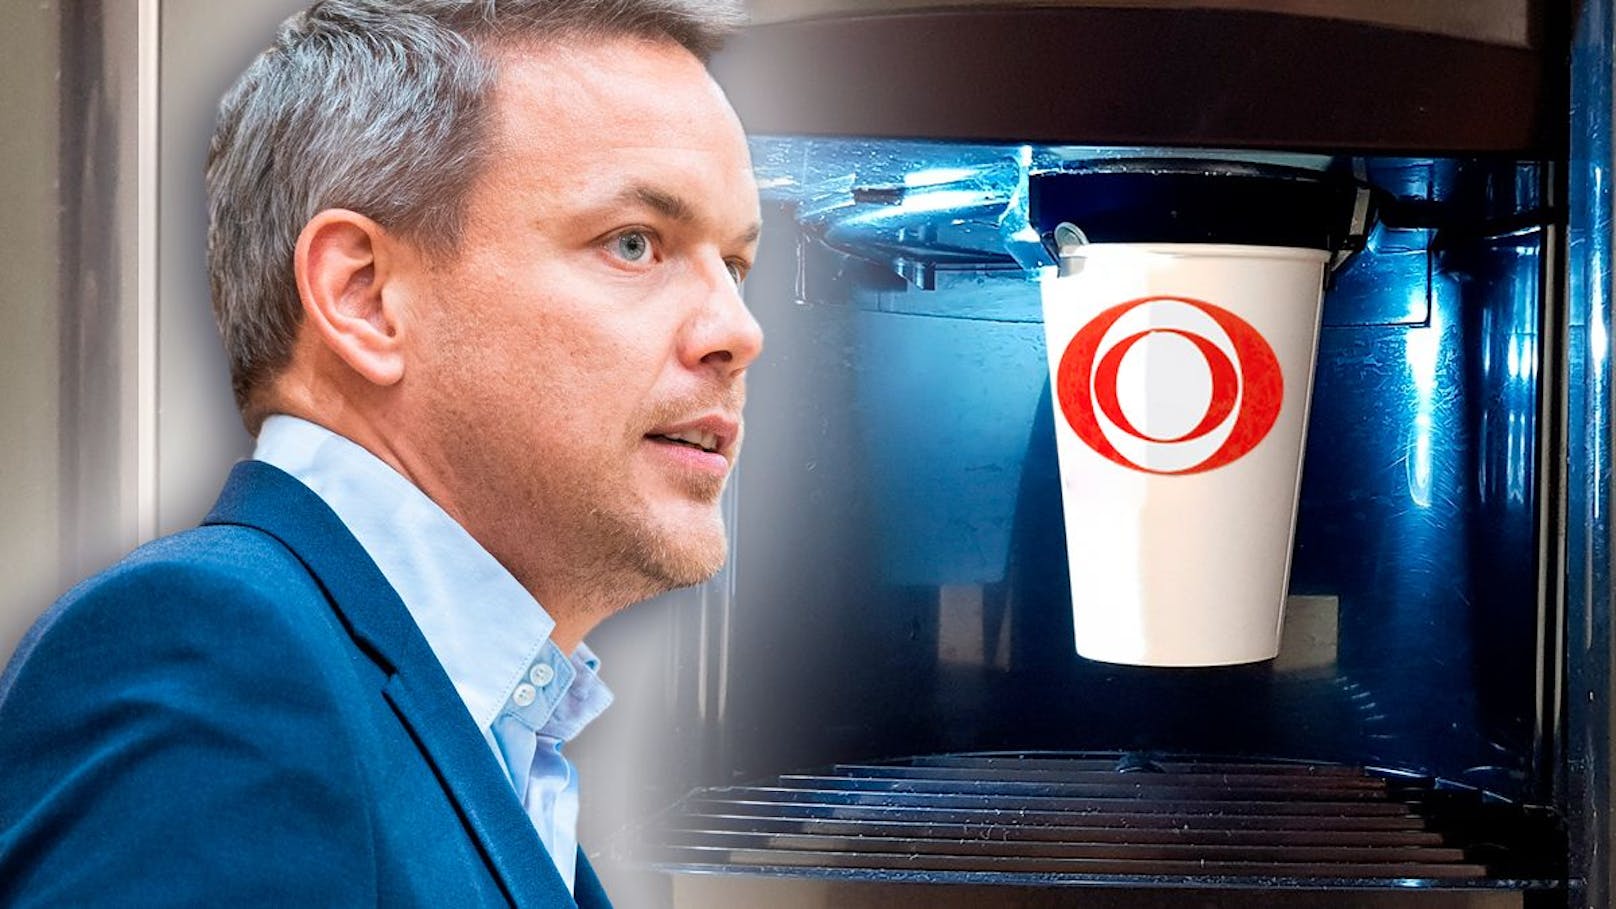 Martin Thür ist mit dem Automatenkaffee im ORF-Zentrum und dessen Preis nicht zufrieden.